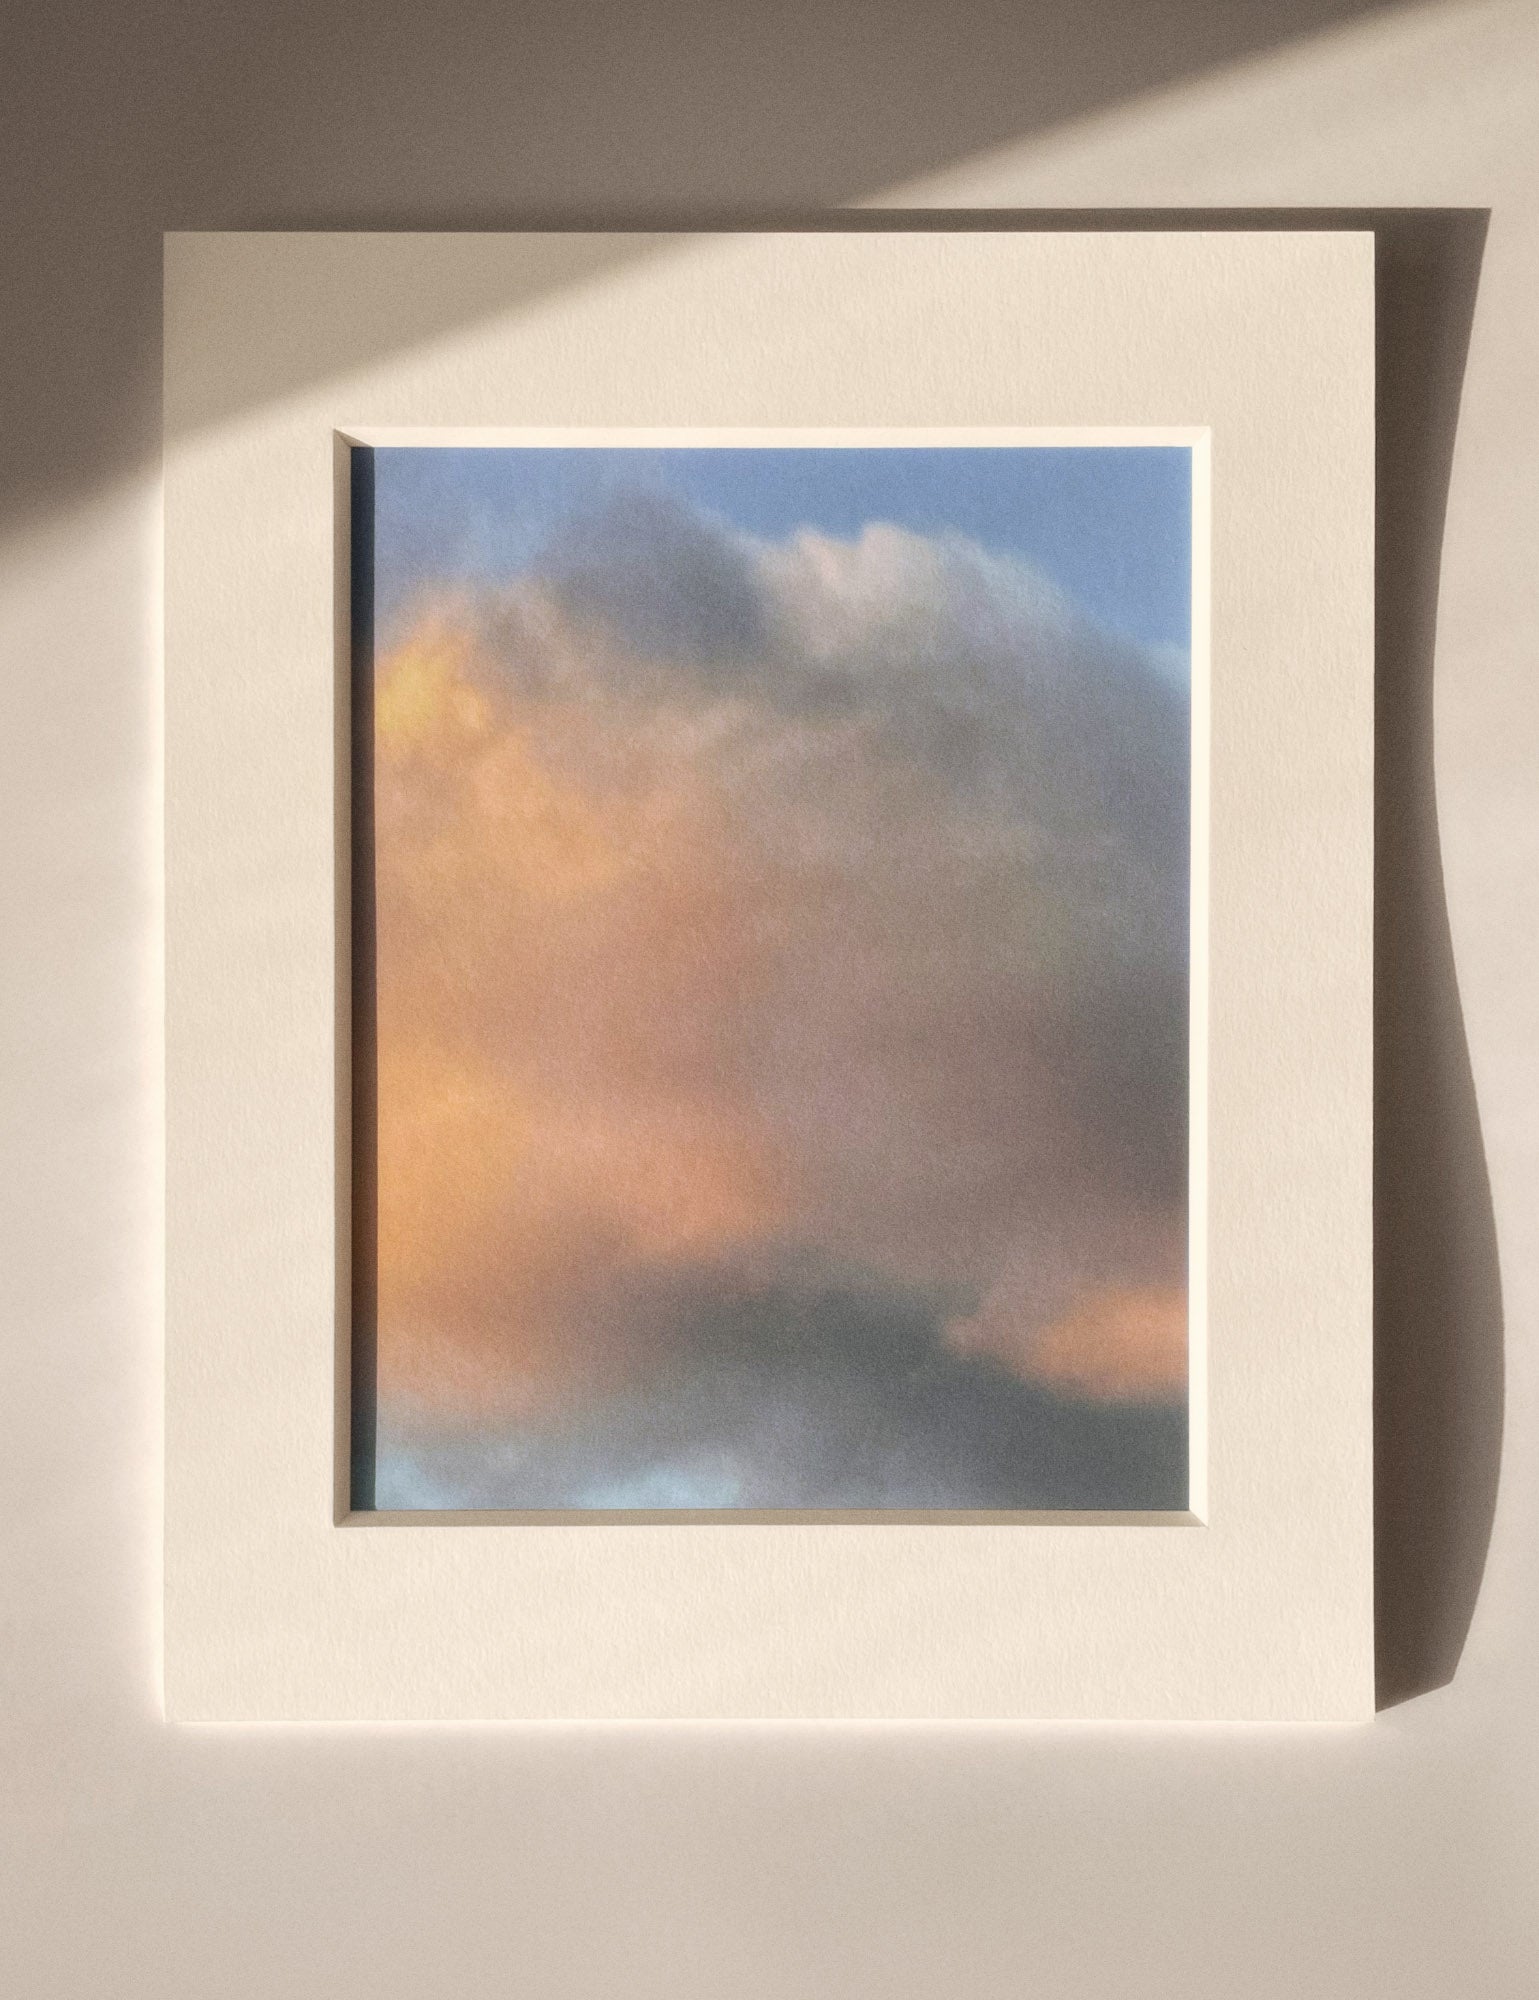 5:06:54 PM - Cloud Art Print - Puleun Blue